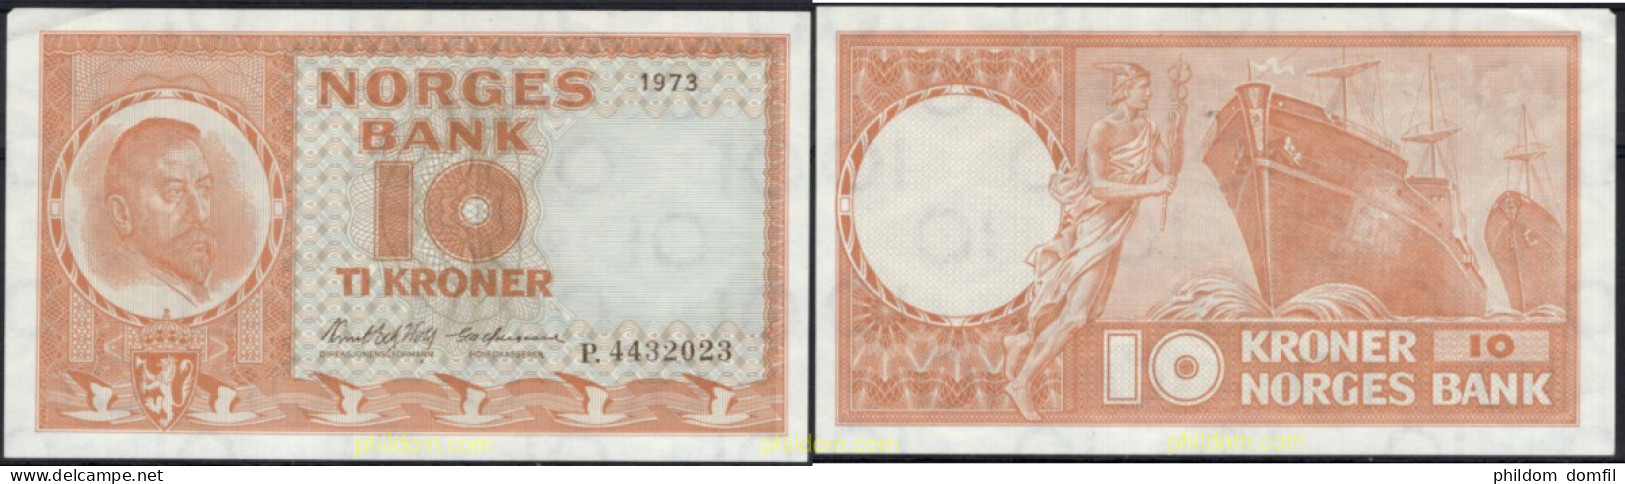 8536 NORUEGA 1973 NORWAY NORGES BANK 1973 10 KRONER - Noruega